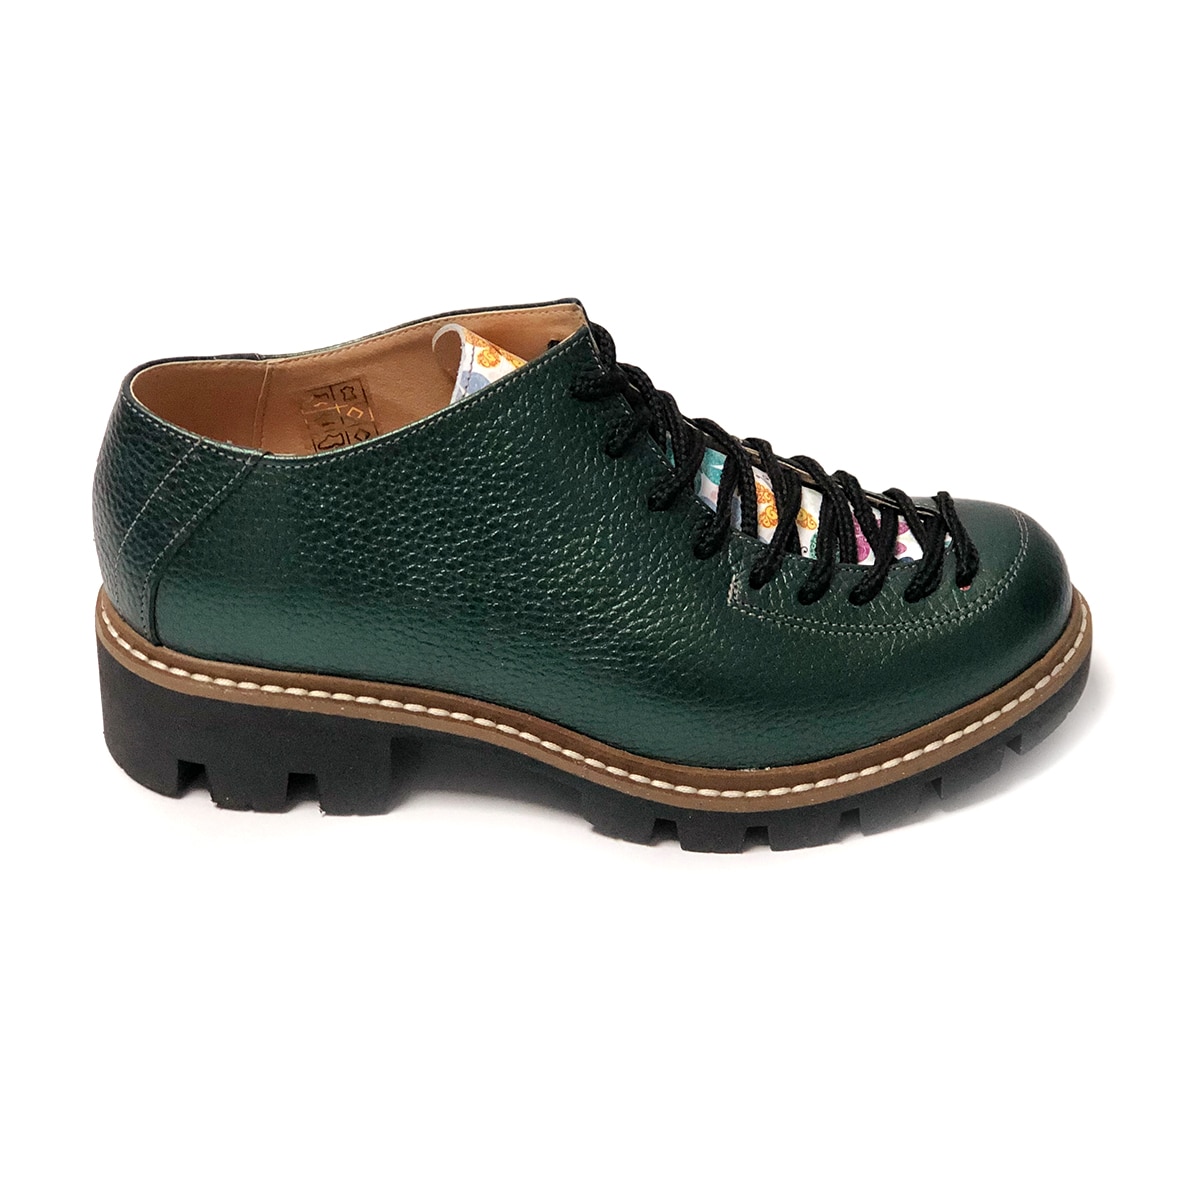 Pantofi verzi cu siret si talpa groasa Louisa, Piele Naturala, Mateo Shoes, 39 EU - eMAG.ro